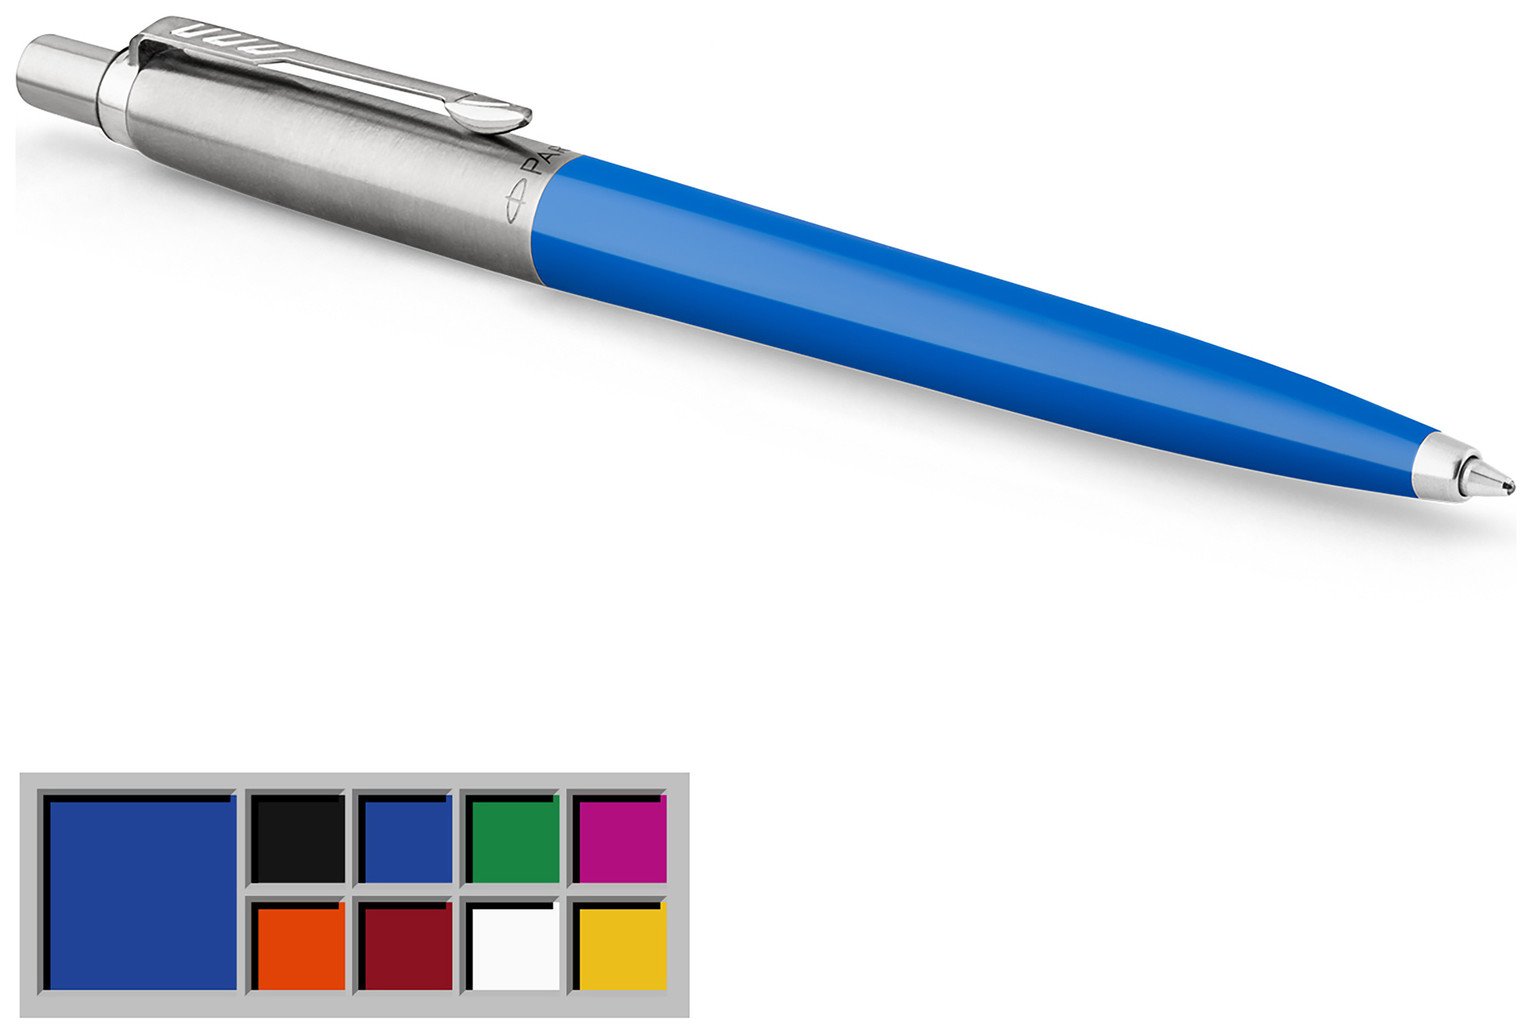 Parker Jotter Original Blue Ballpoint Pen